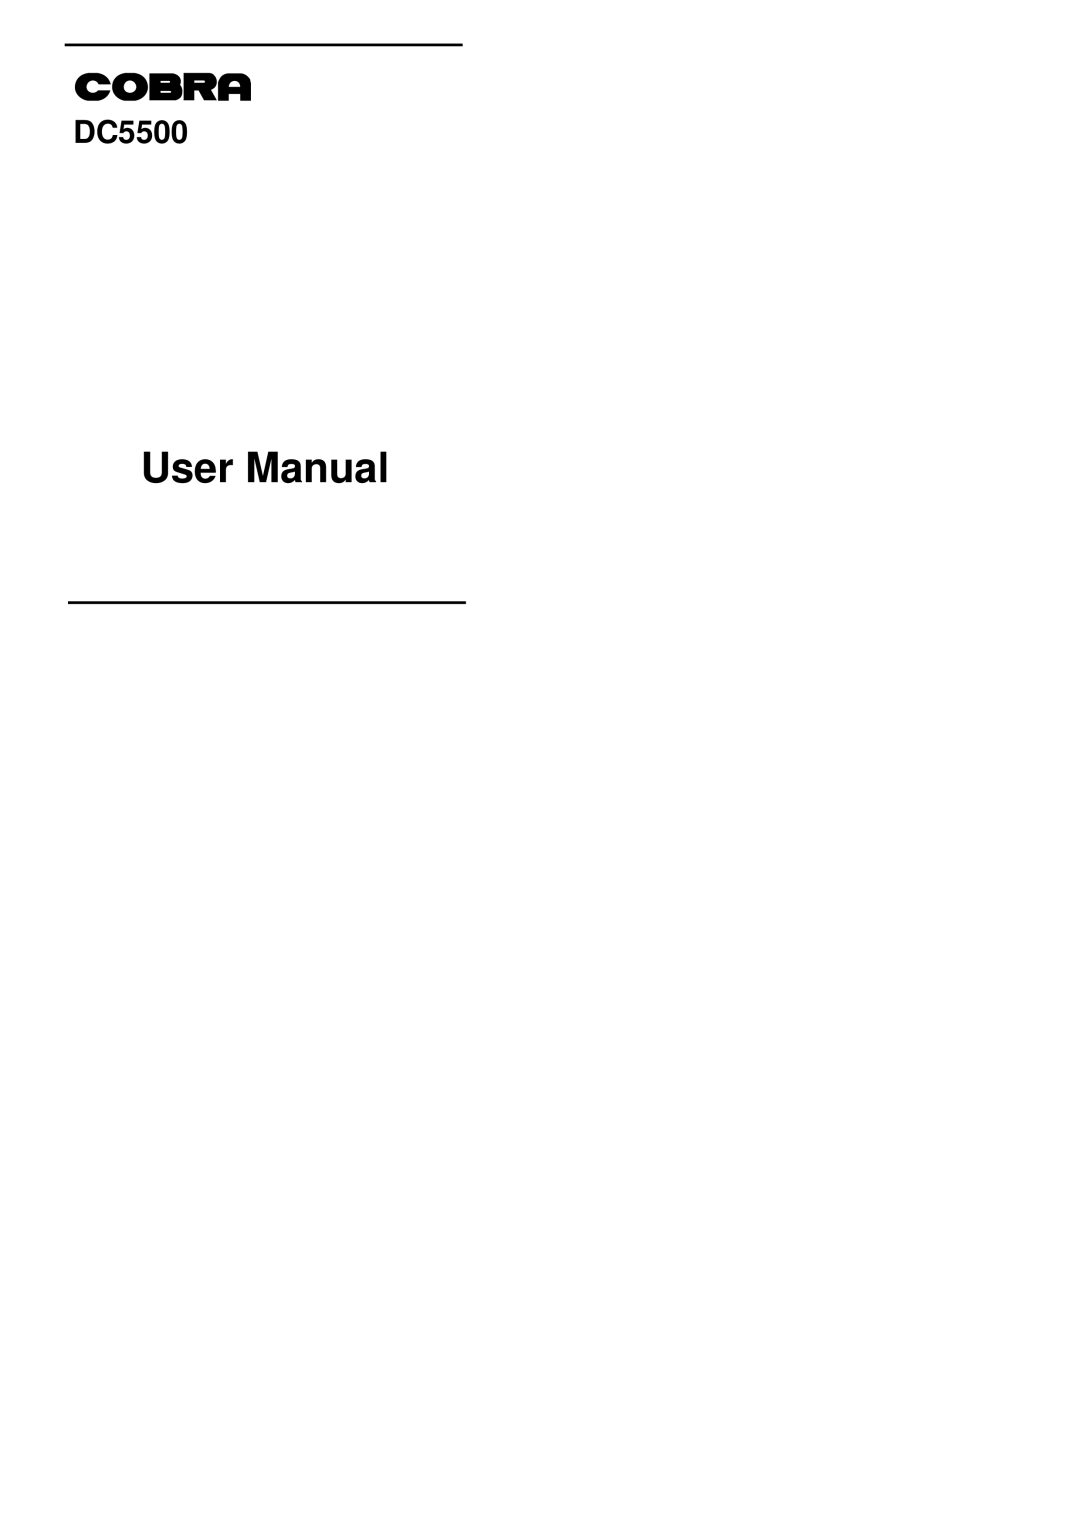 Cobra Digital DC5500 user manual User Manual 